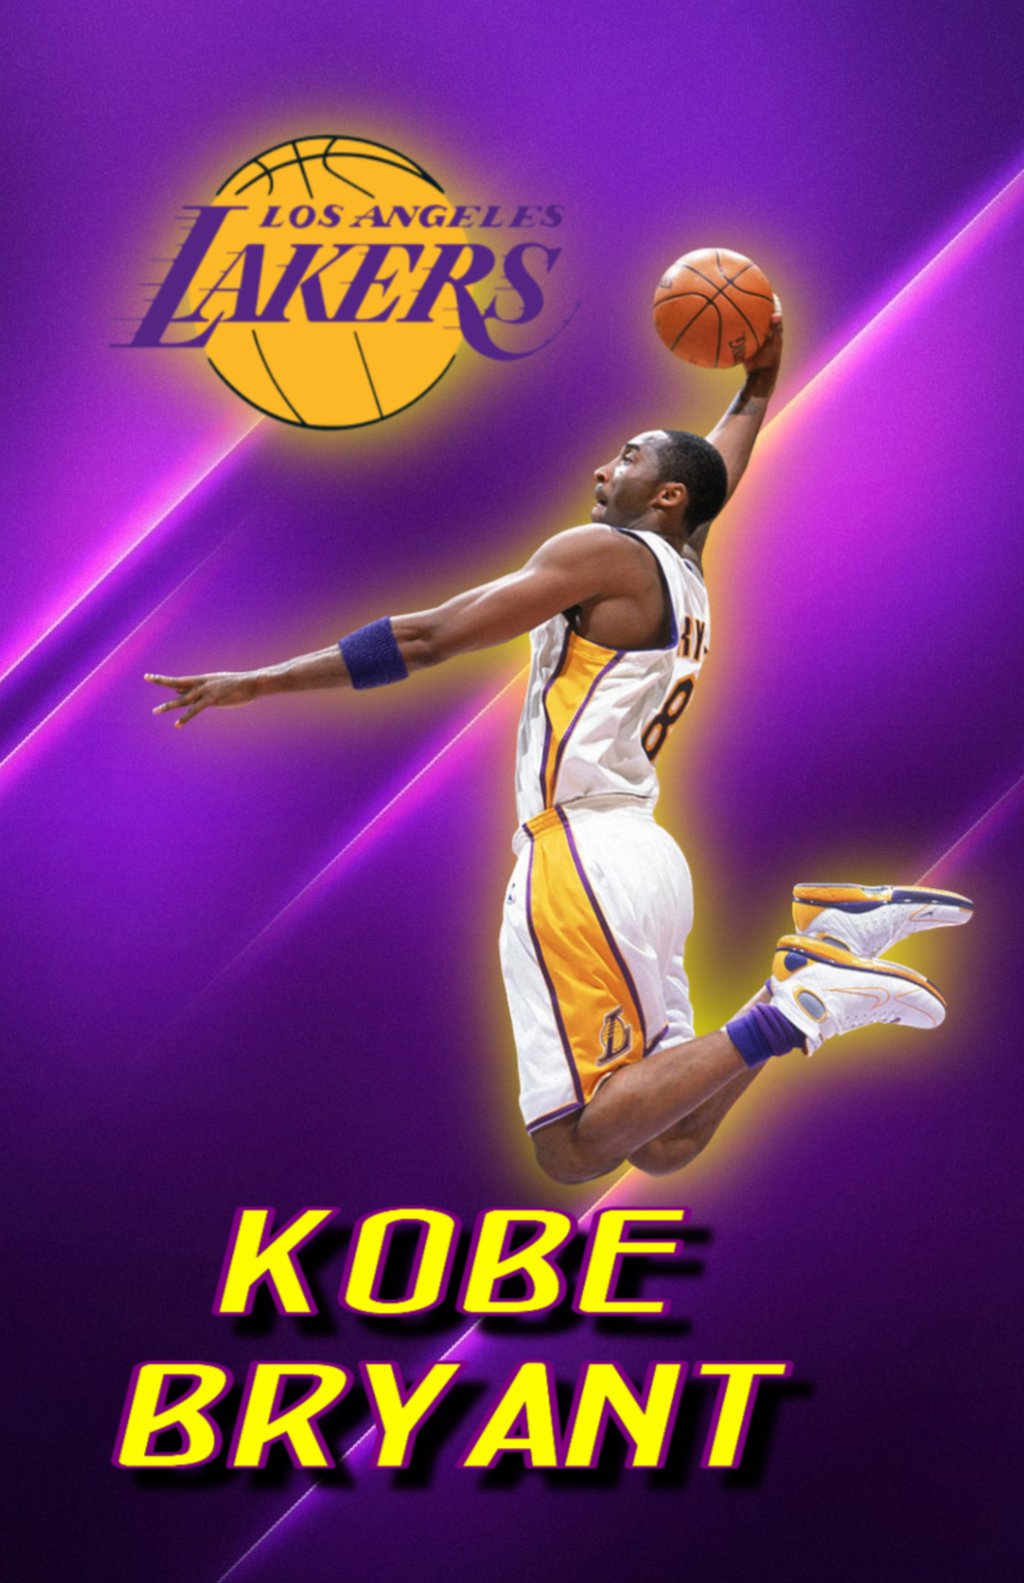 Download NBA iPhone Kobe Bryant Los Angeles Lakers 24 Wallpaper  Wallpapers com